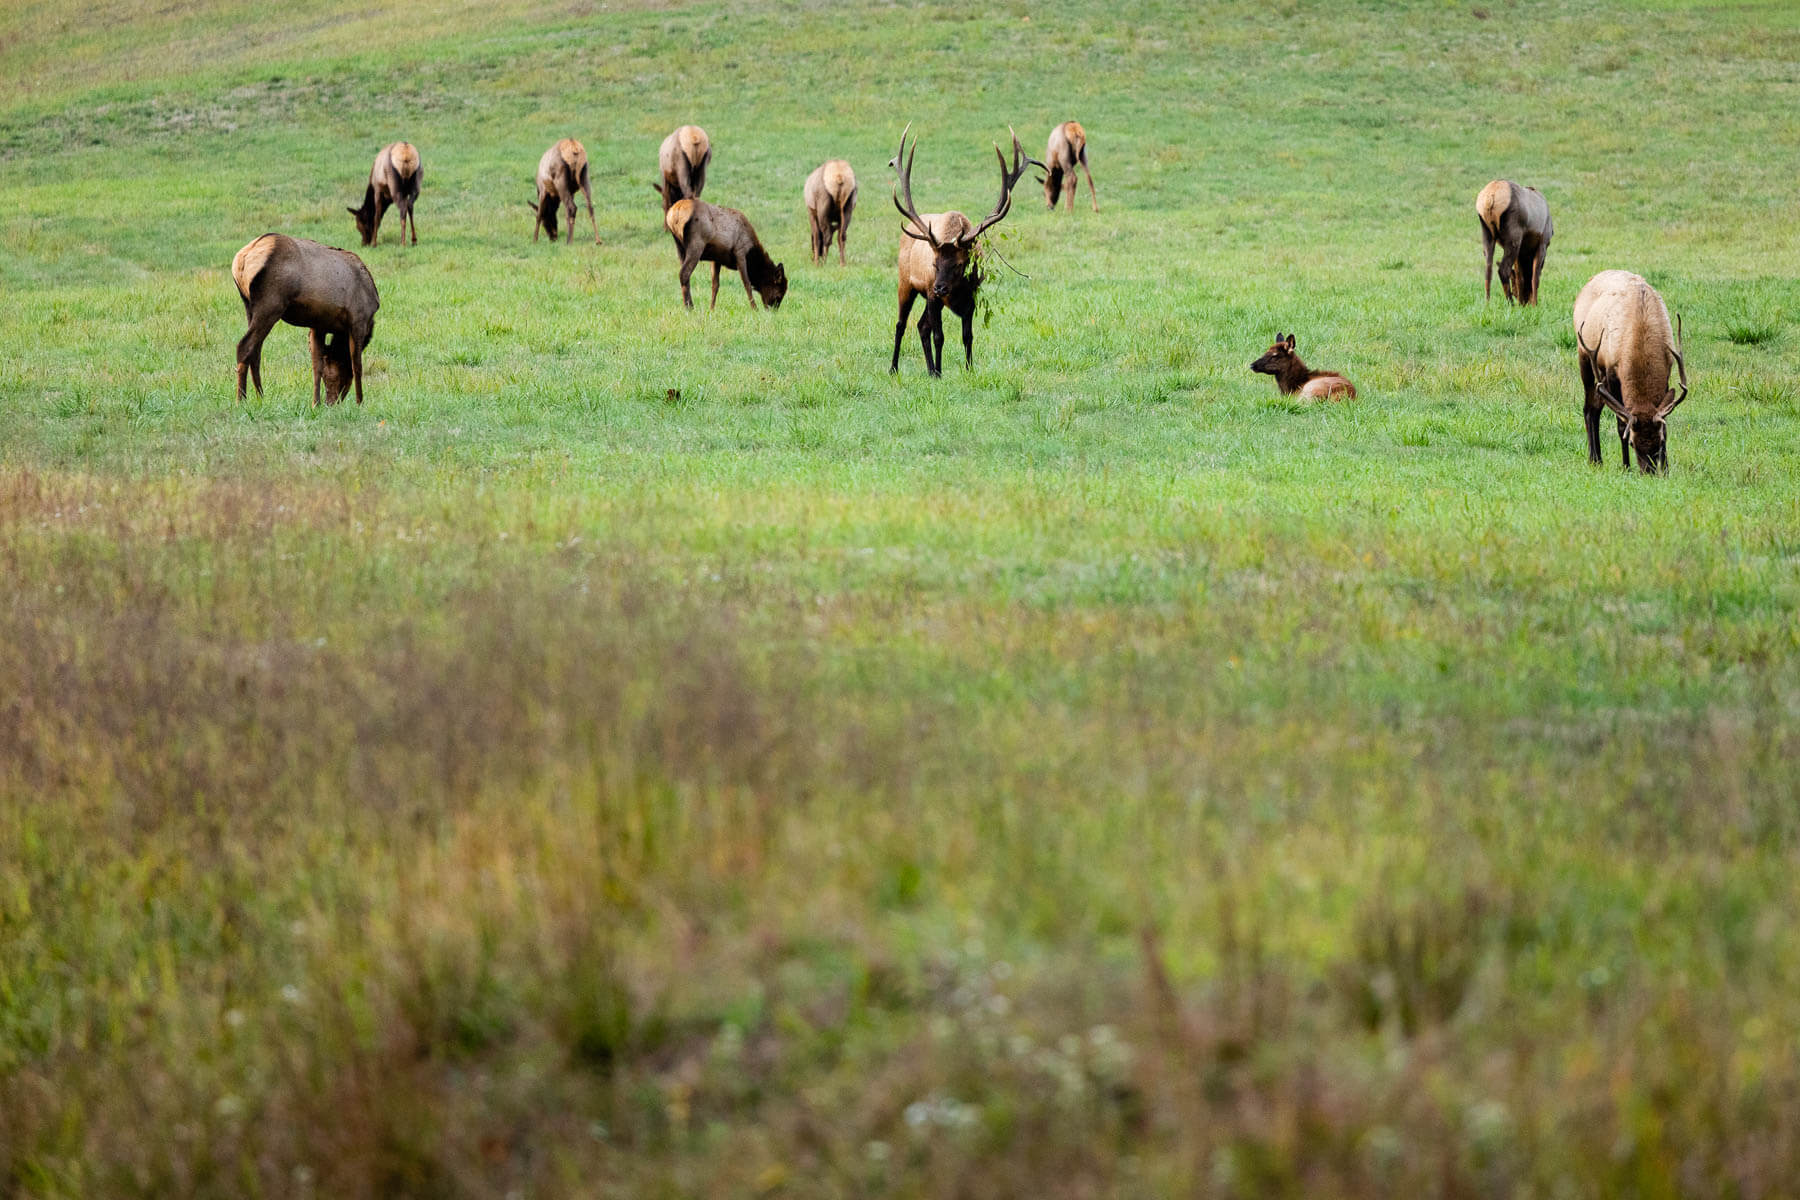 A herd of elk grazes a grassy field